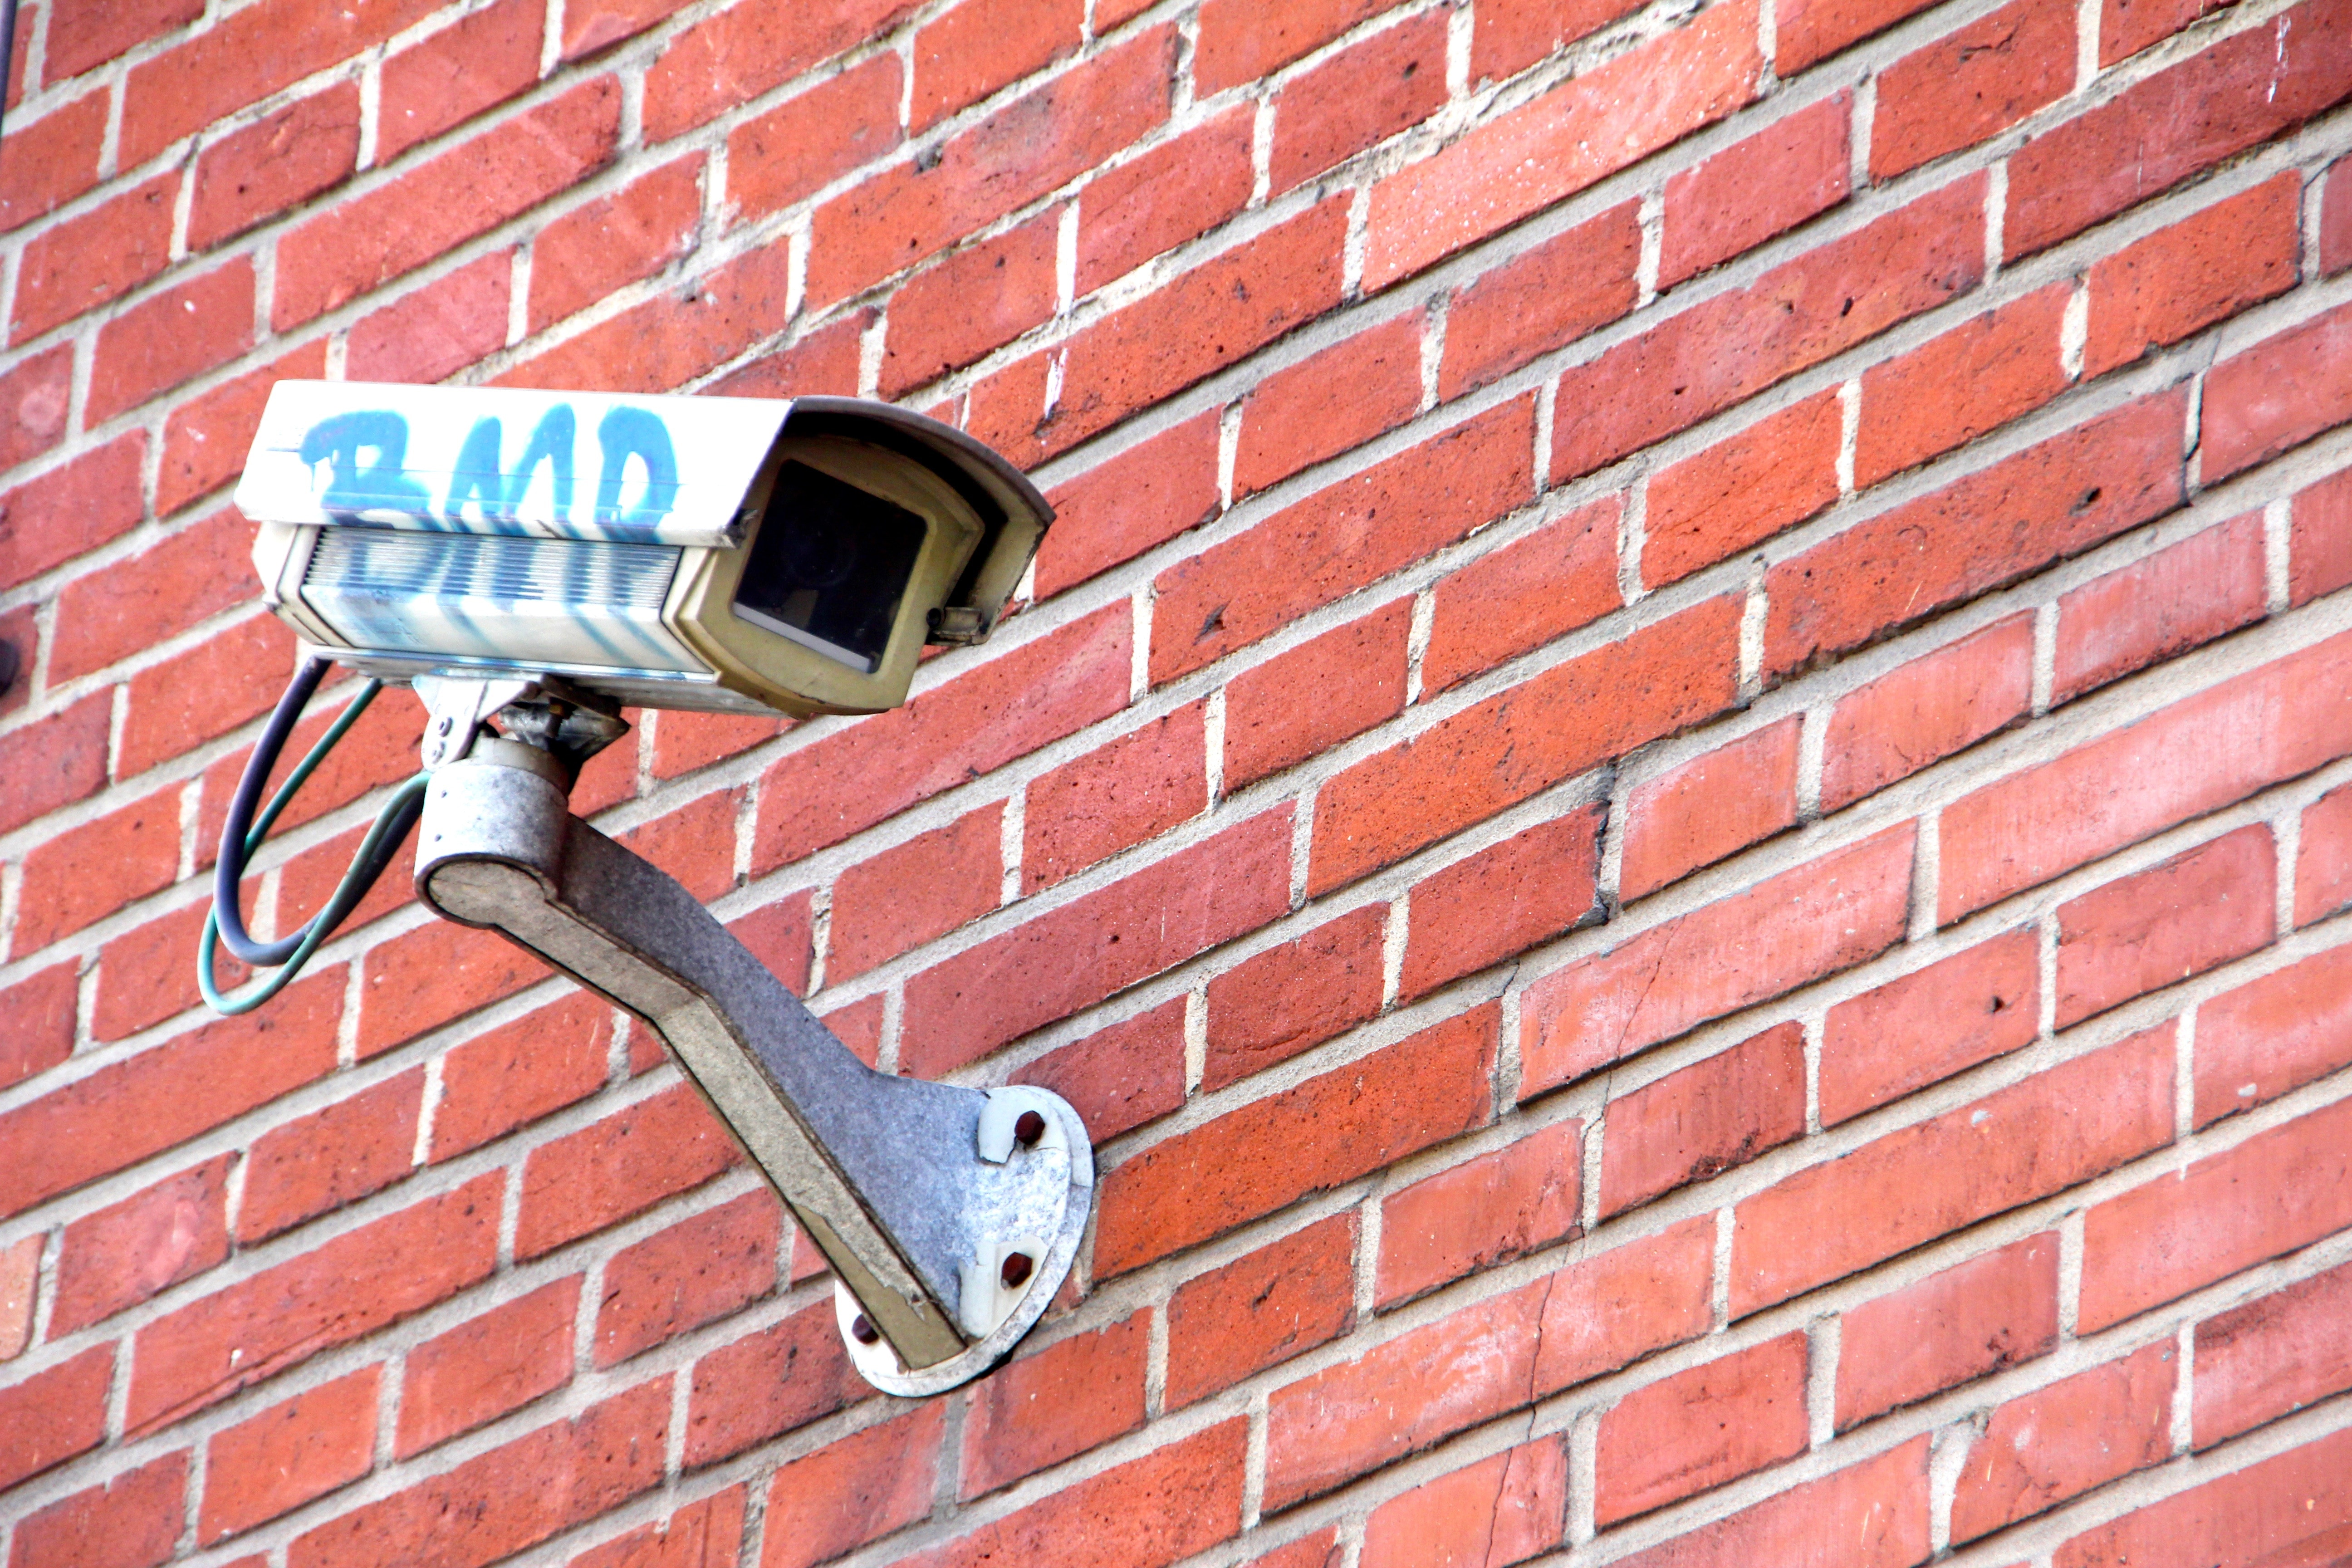 Camera, Monitoring, Security, brick wall, brick